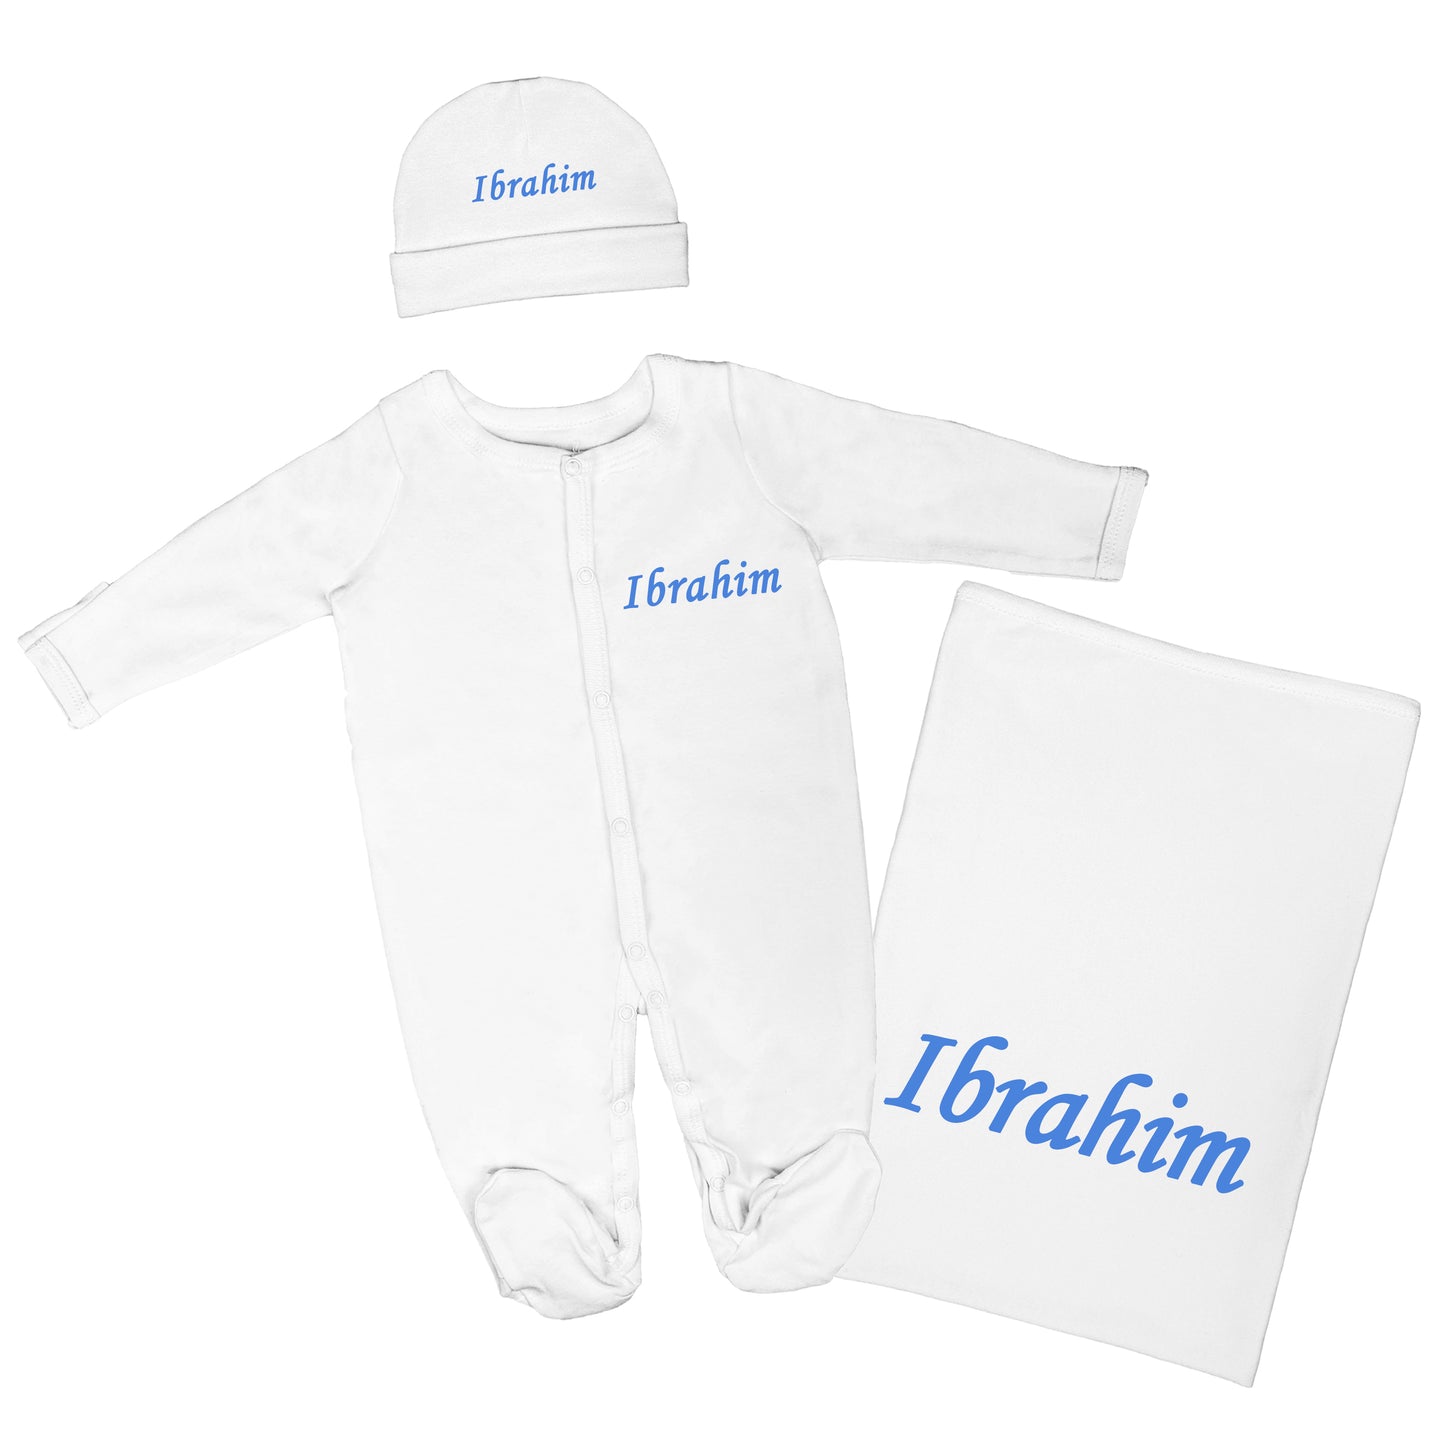 Personalized Baby Clothing Set (Blanket, Sleepsuit, Beanie) - English Name